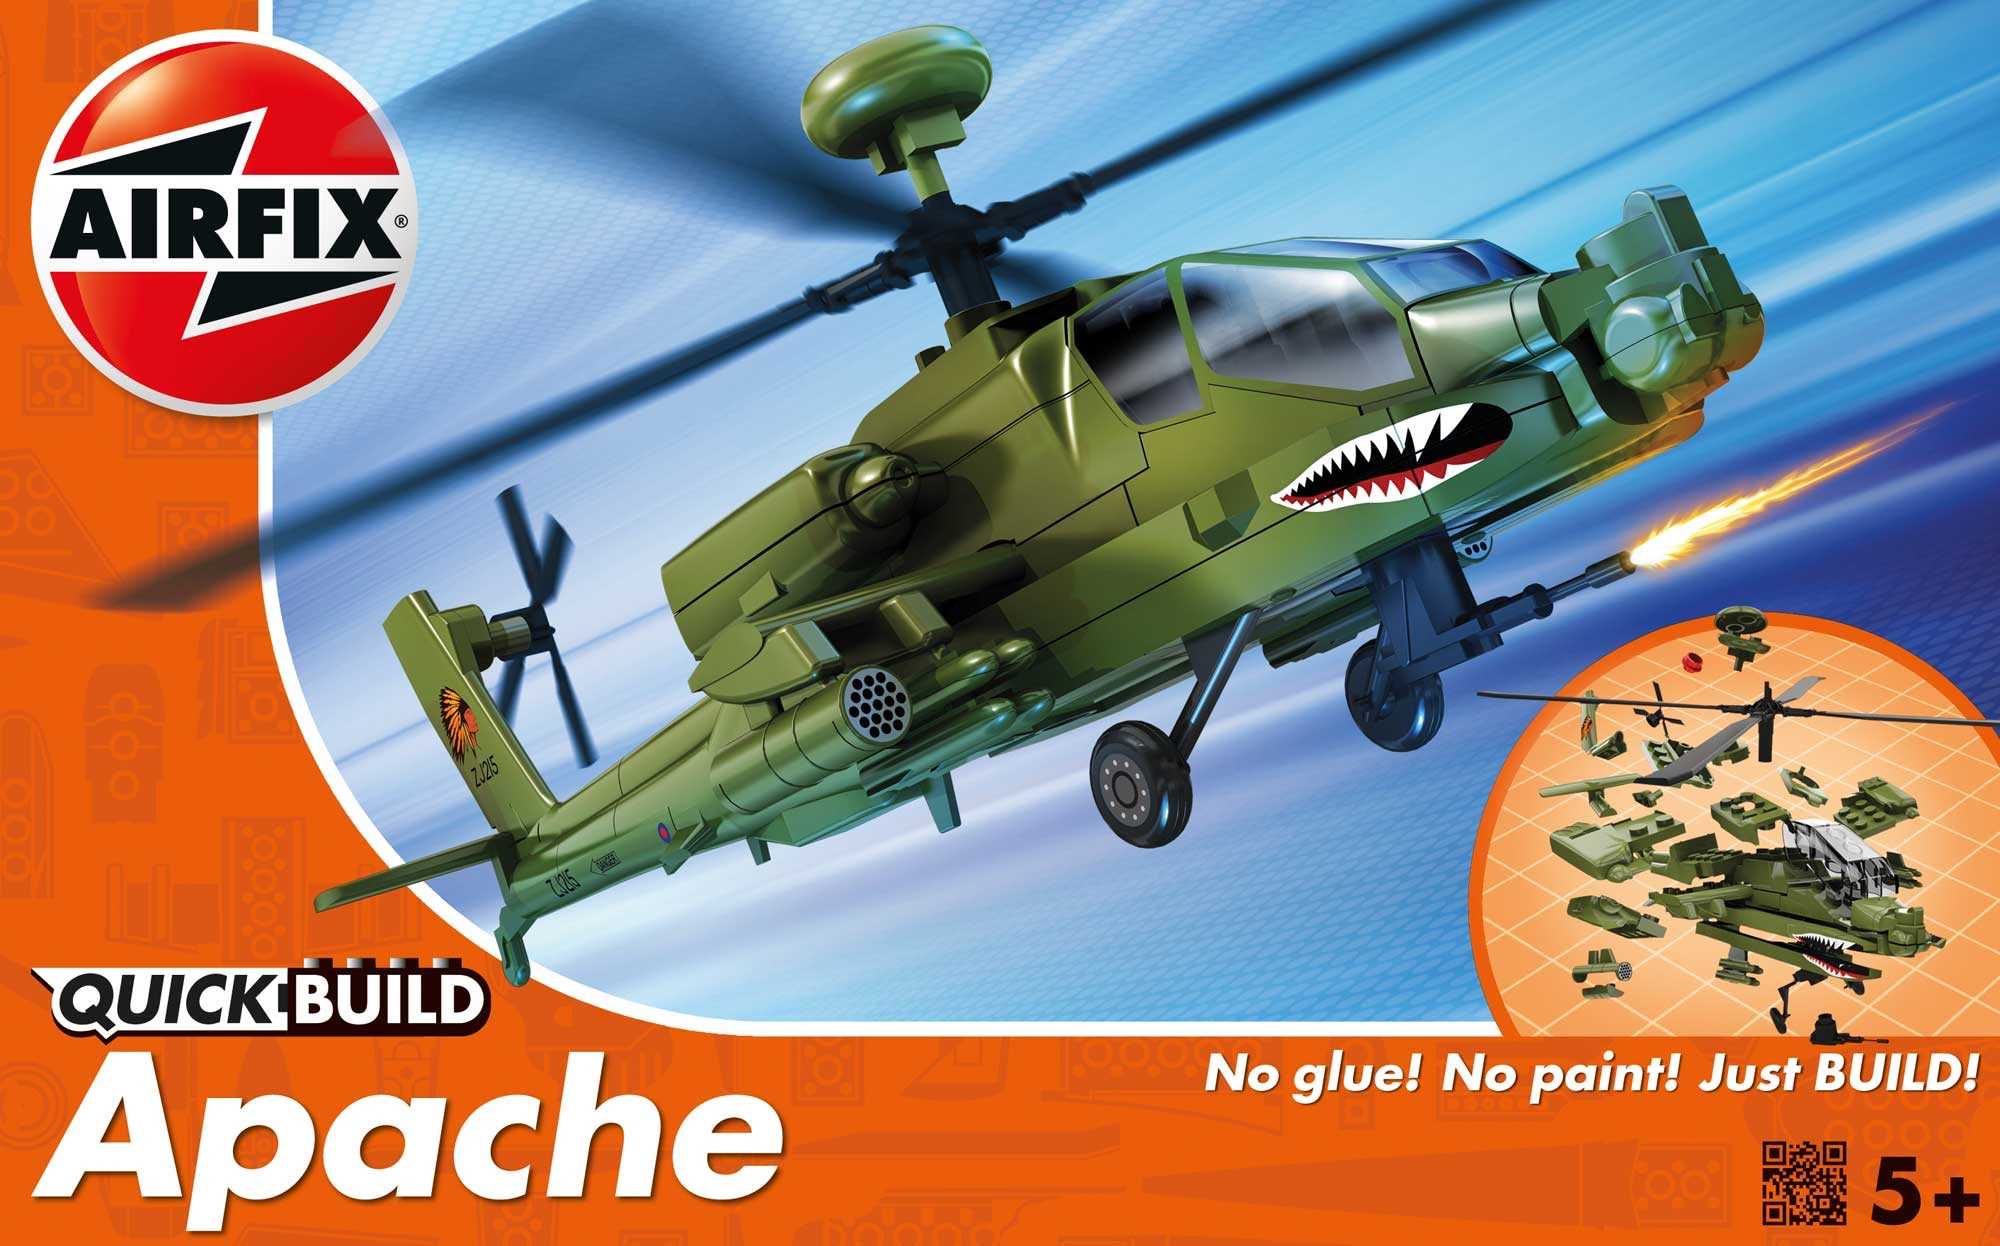 Airfix Quick Build vrtulník J6004 - Boeing Apache